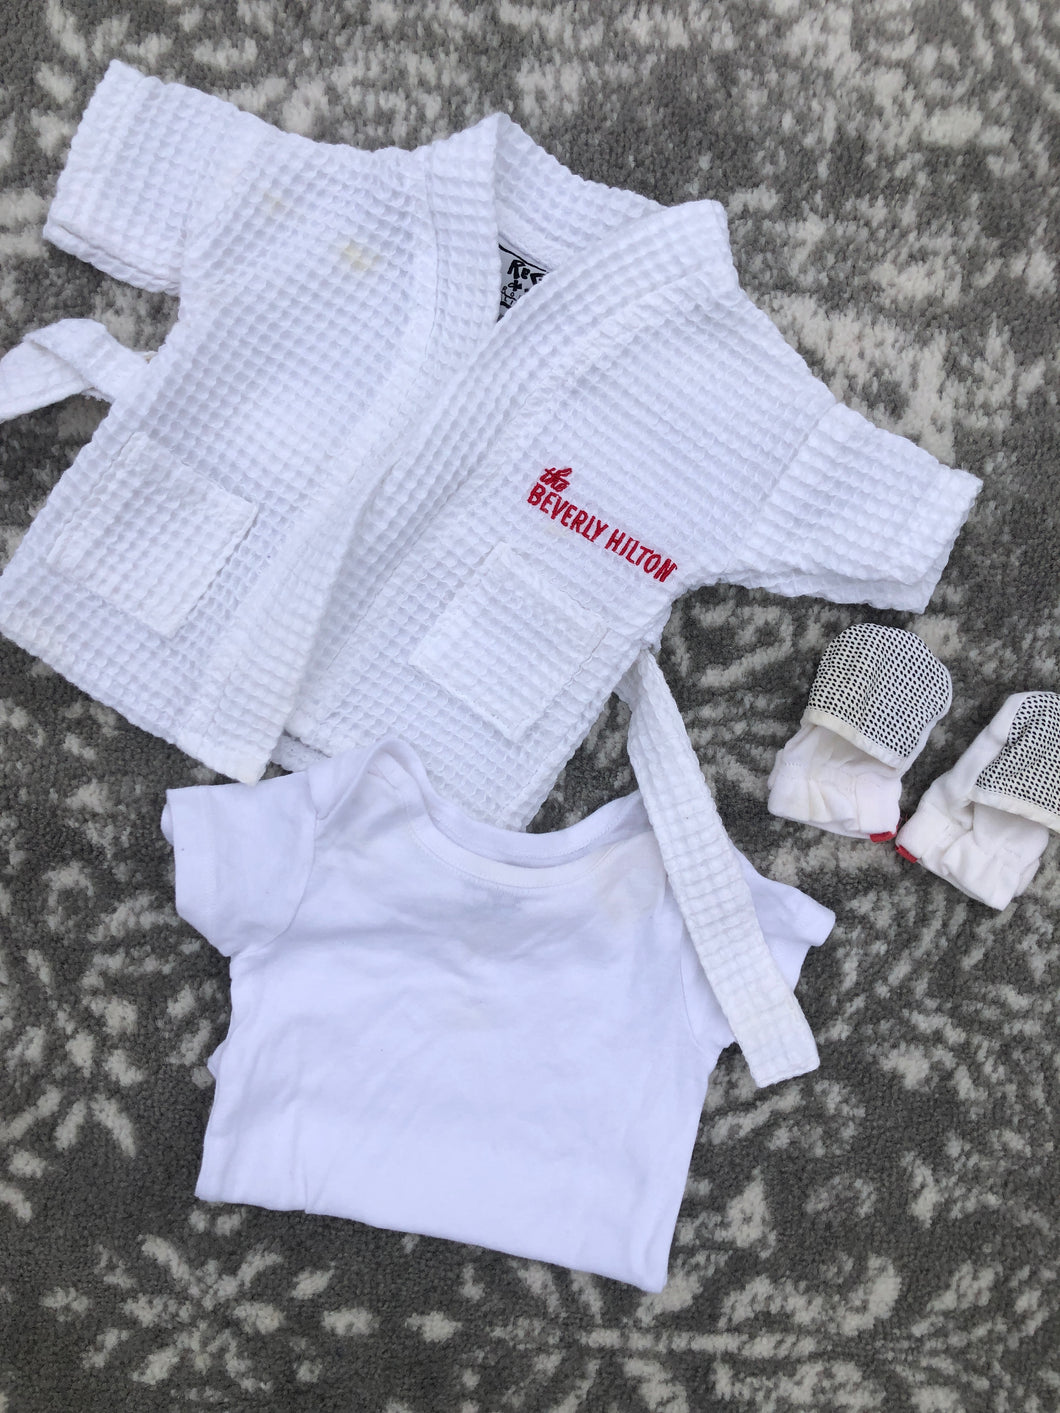 Beverly Hilton Hotel infant bath robe set- hand mittens and onesie size 0-6 months  Newborn